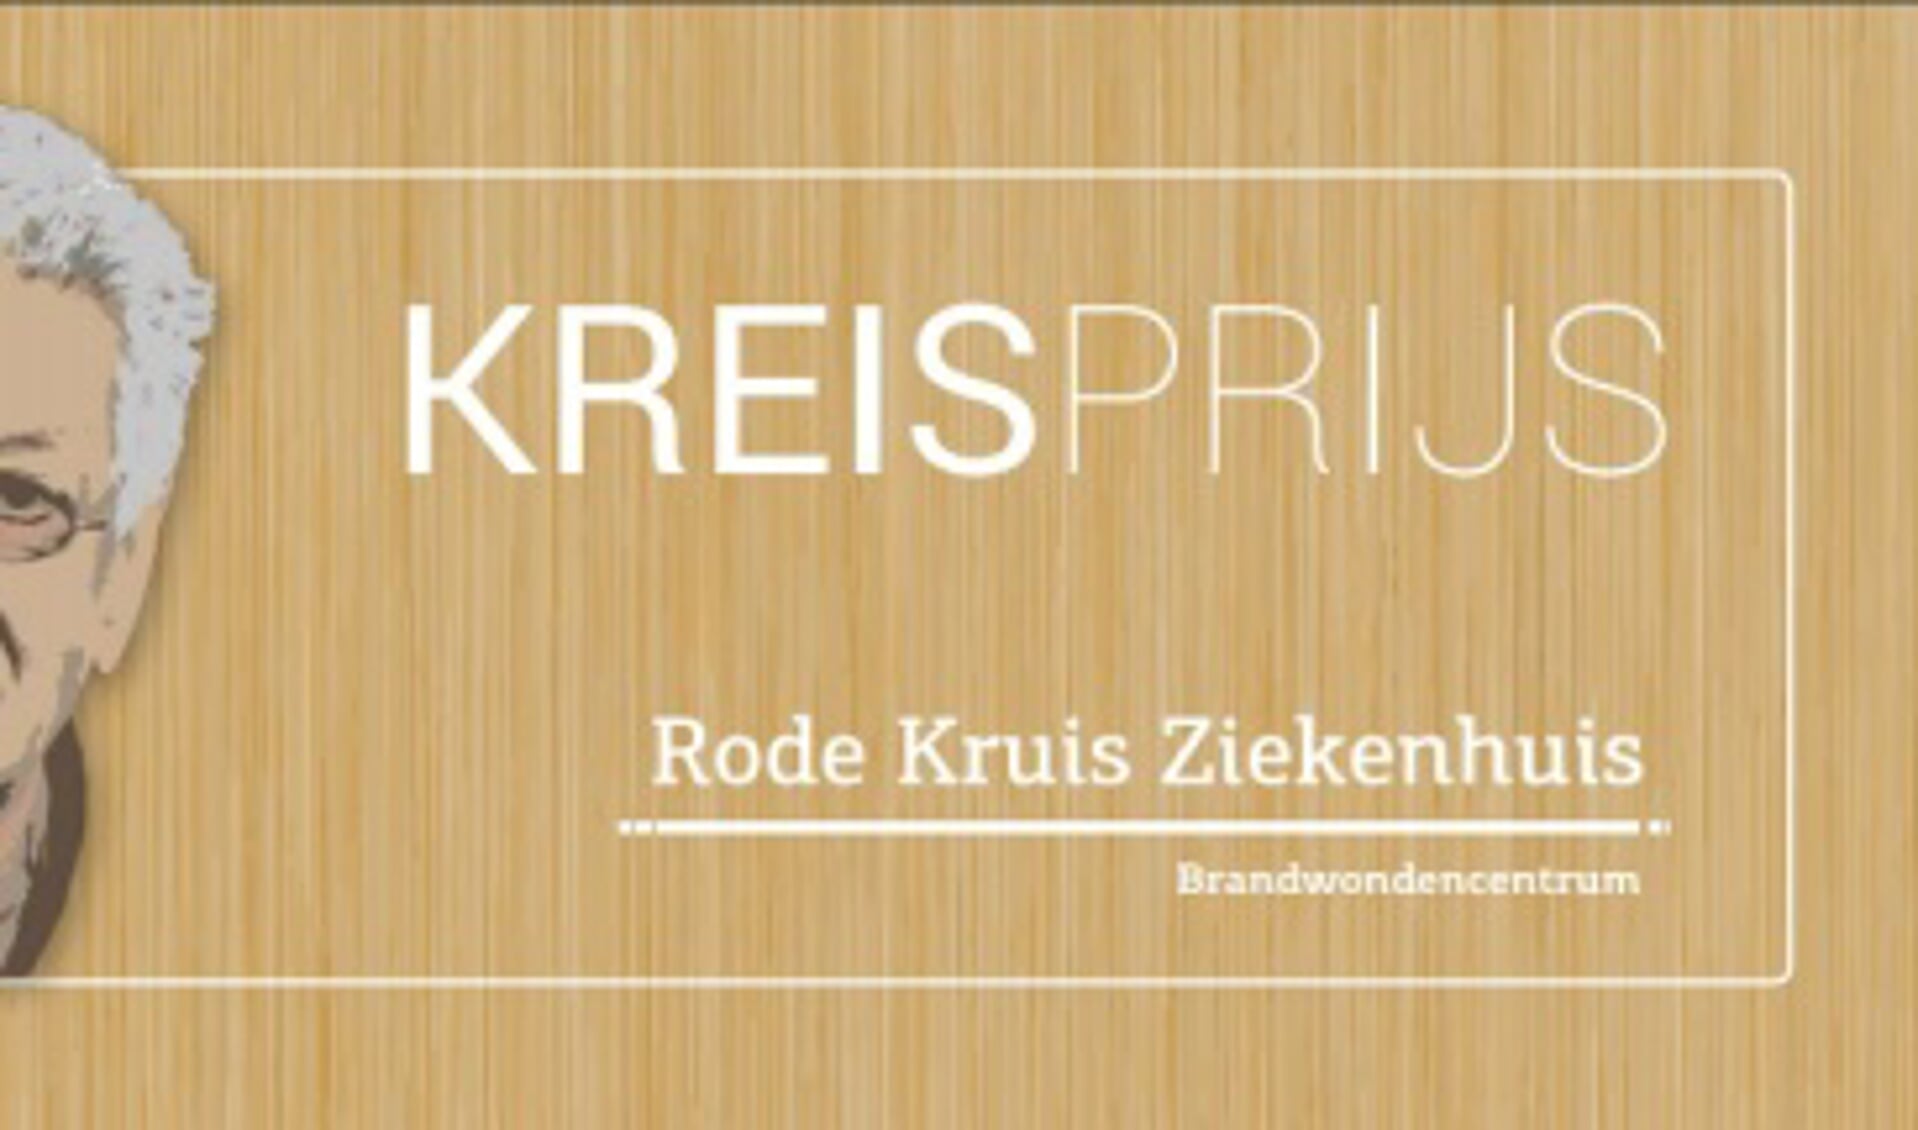 De Kreisprijs is in 2009 ingesteld.